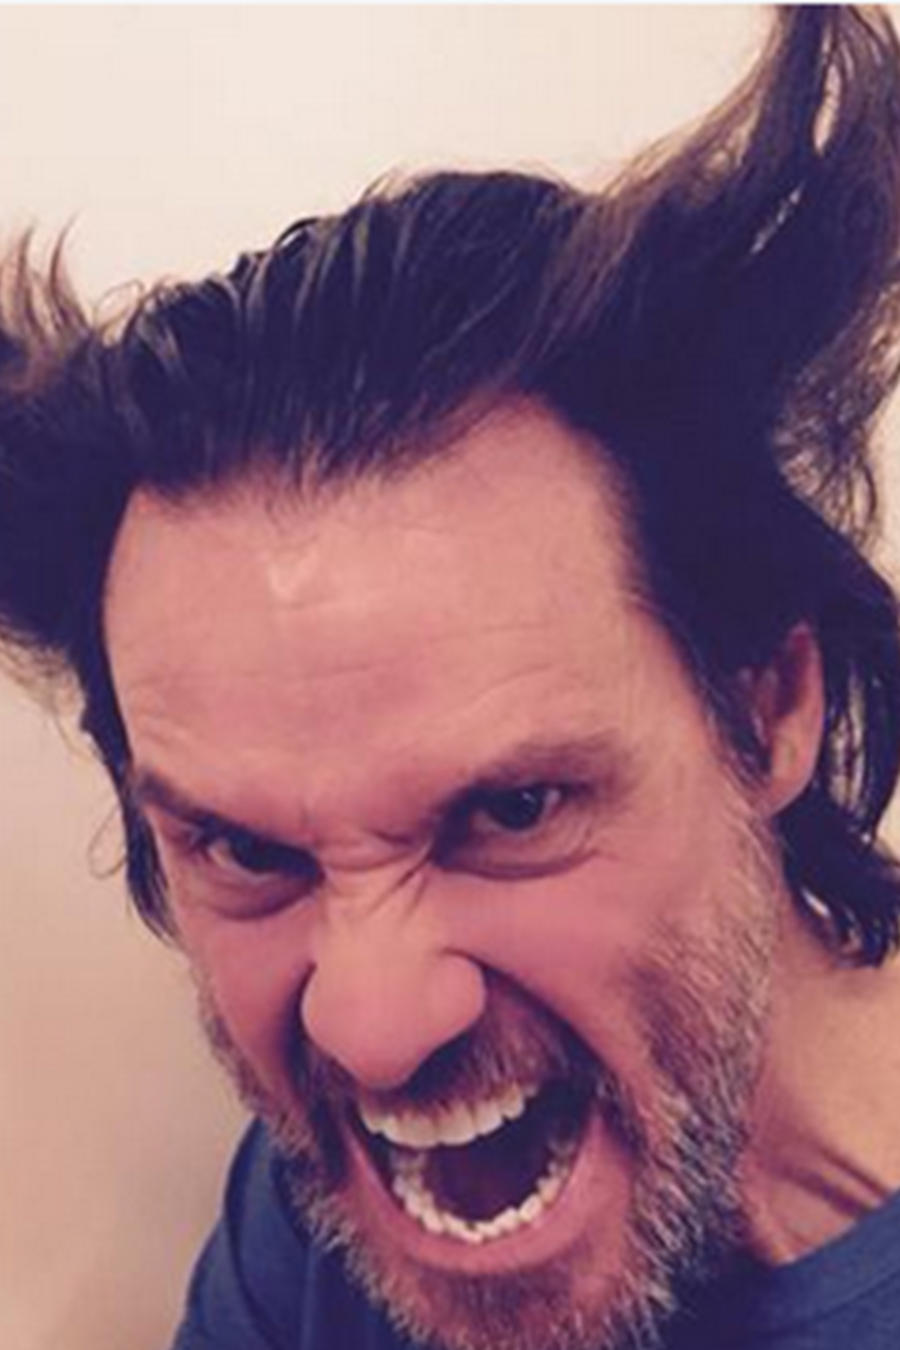 Jim Carrey, el actor de “Ace Ventura” compartió una foto en su cuenta oficial de Twitter imitando al personaje de Hugh Jackman en “Wolverine”.